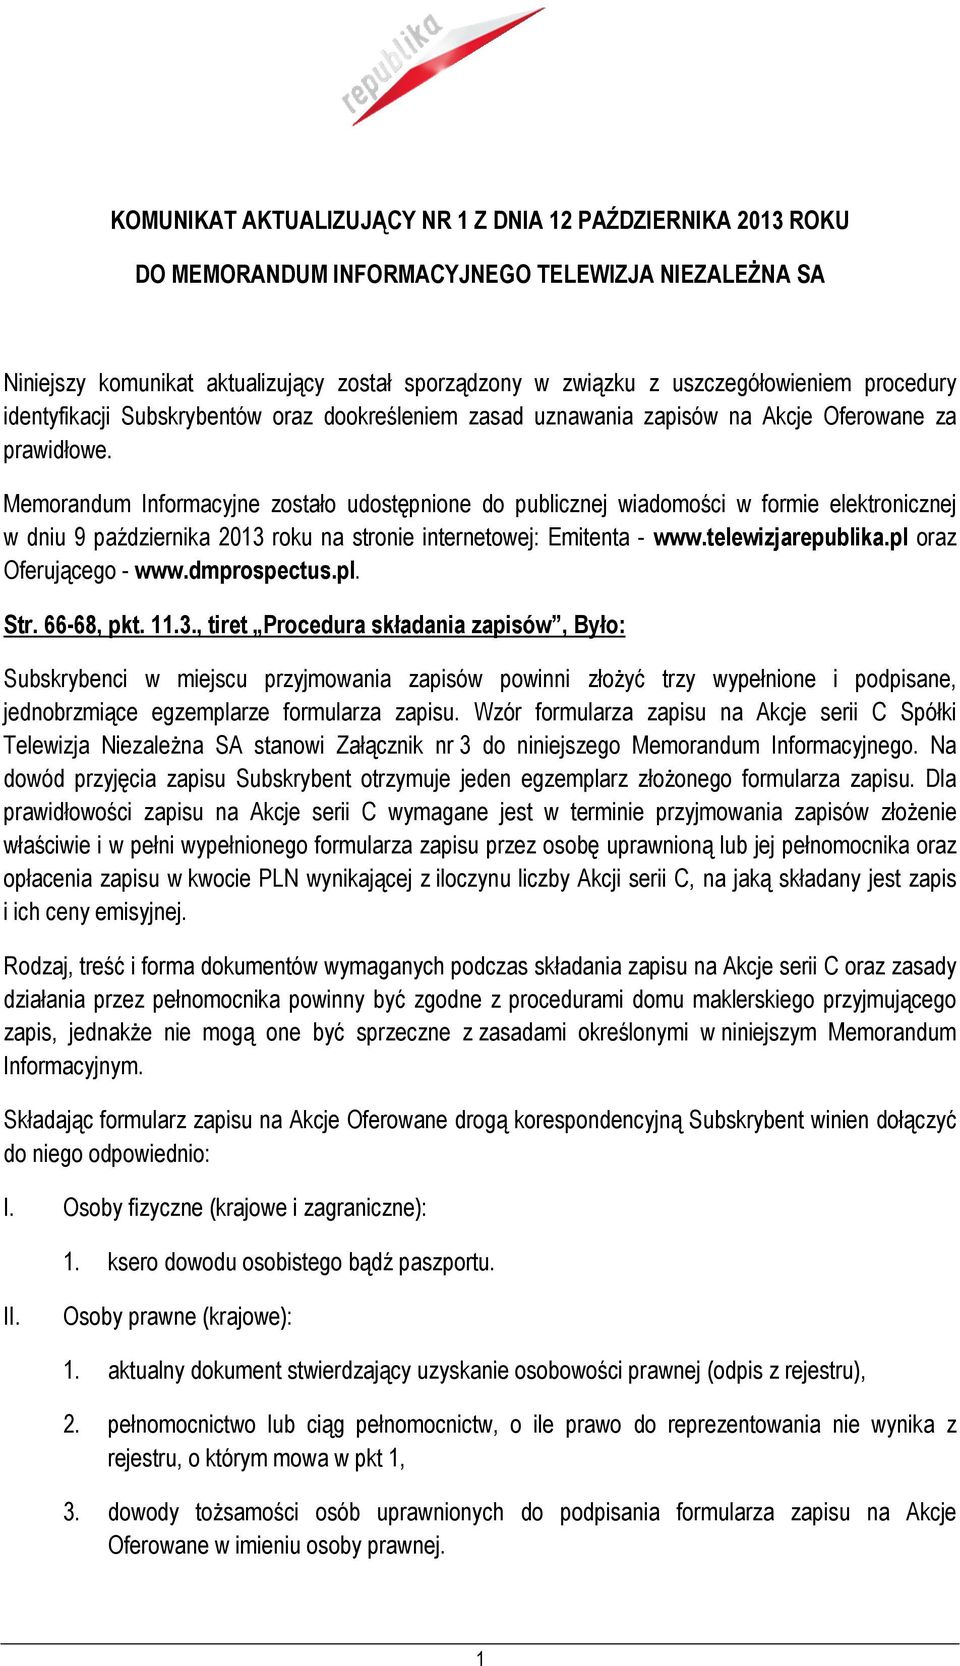 Memorandum Informacyjne zostało udostępnione do publicznej wiadomości w formie elektronicznej w dniu 9 października 2013 roku na stronie internetowej: Emitenta - www.telewizjarepublika.